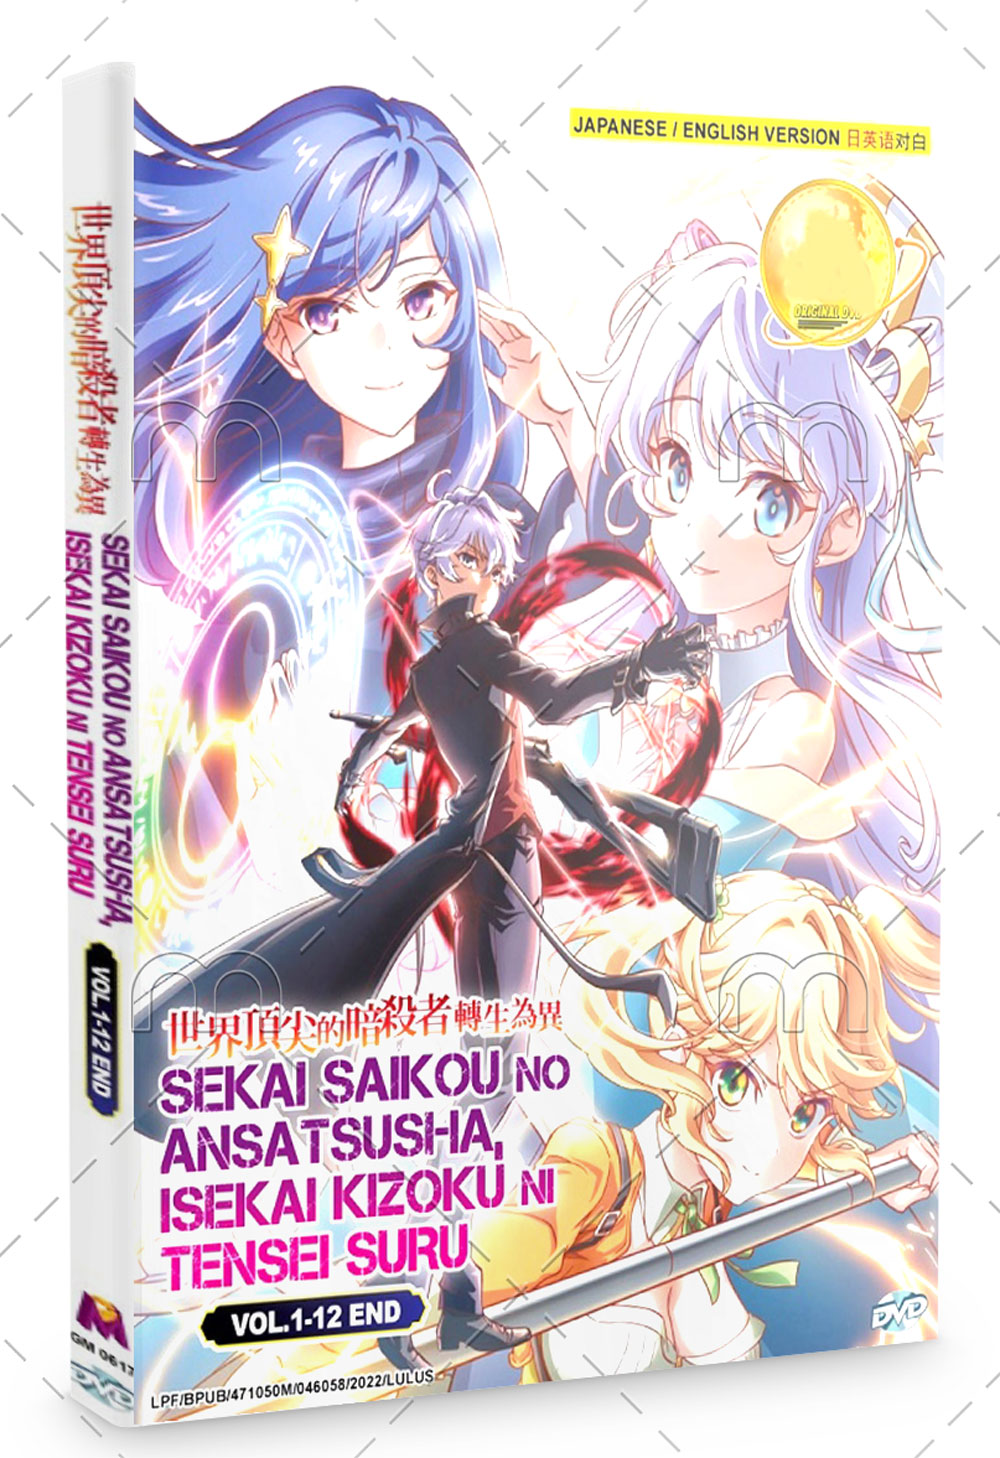 Anime: Sekai Saikou no Ansatsusha, Isekai Kizoku ni Tensei suru